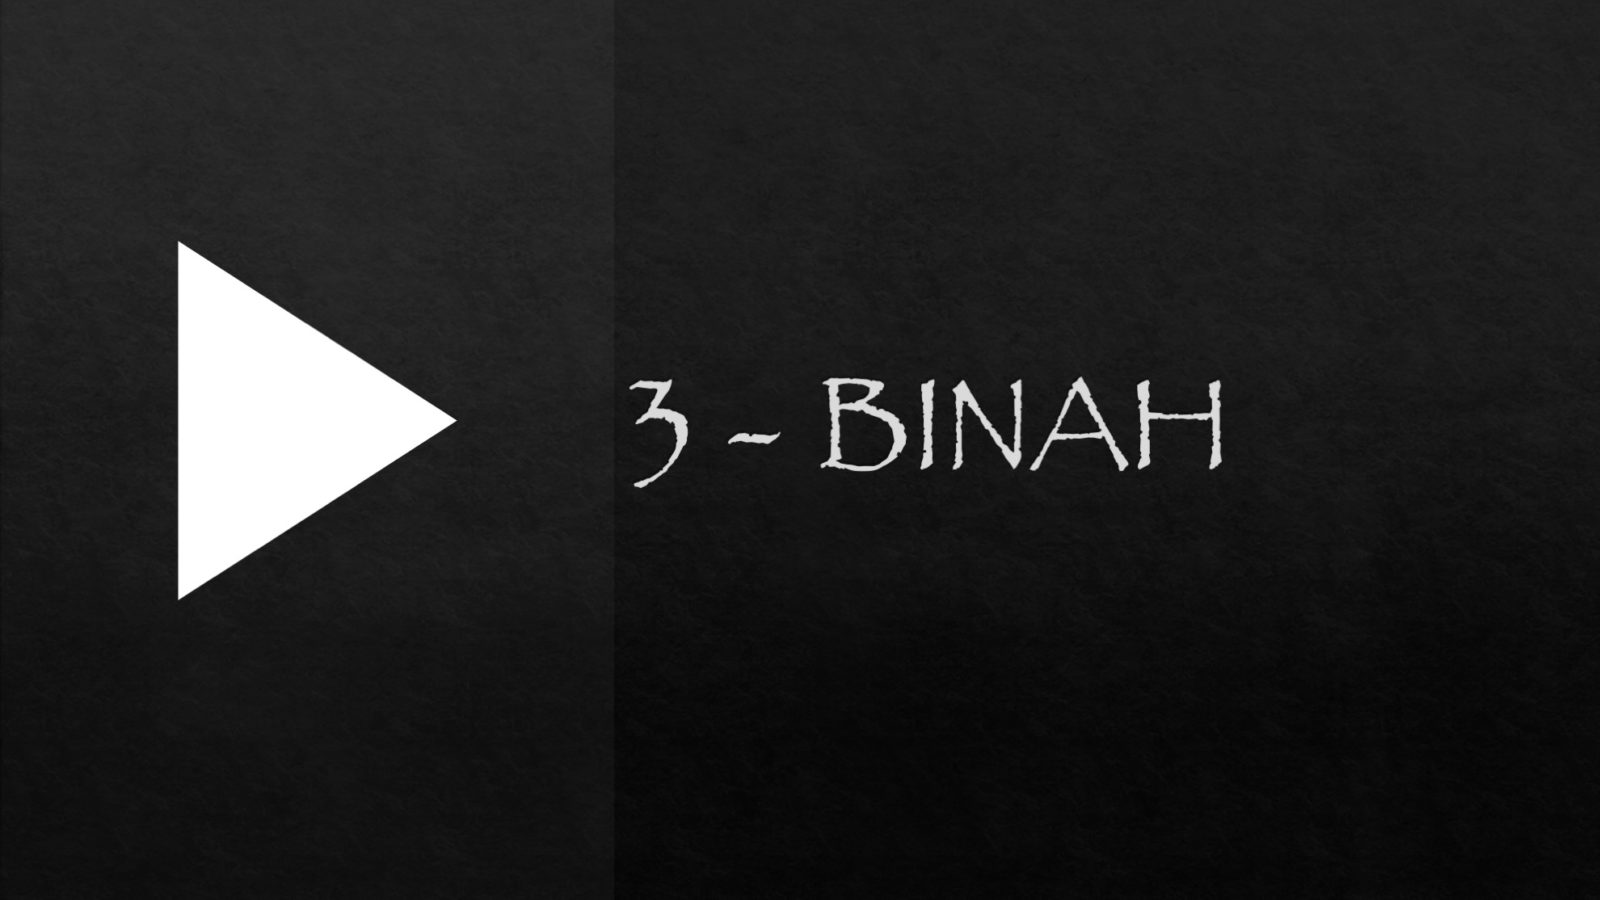 BINAH